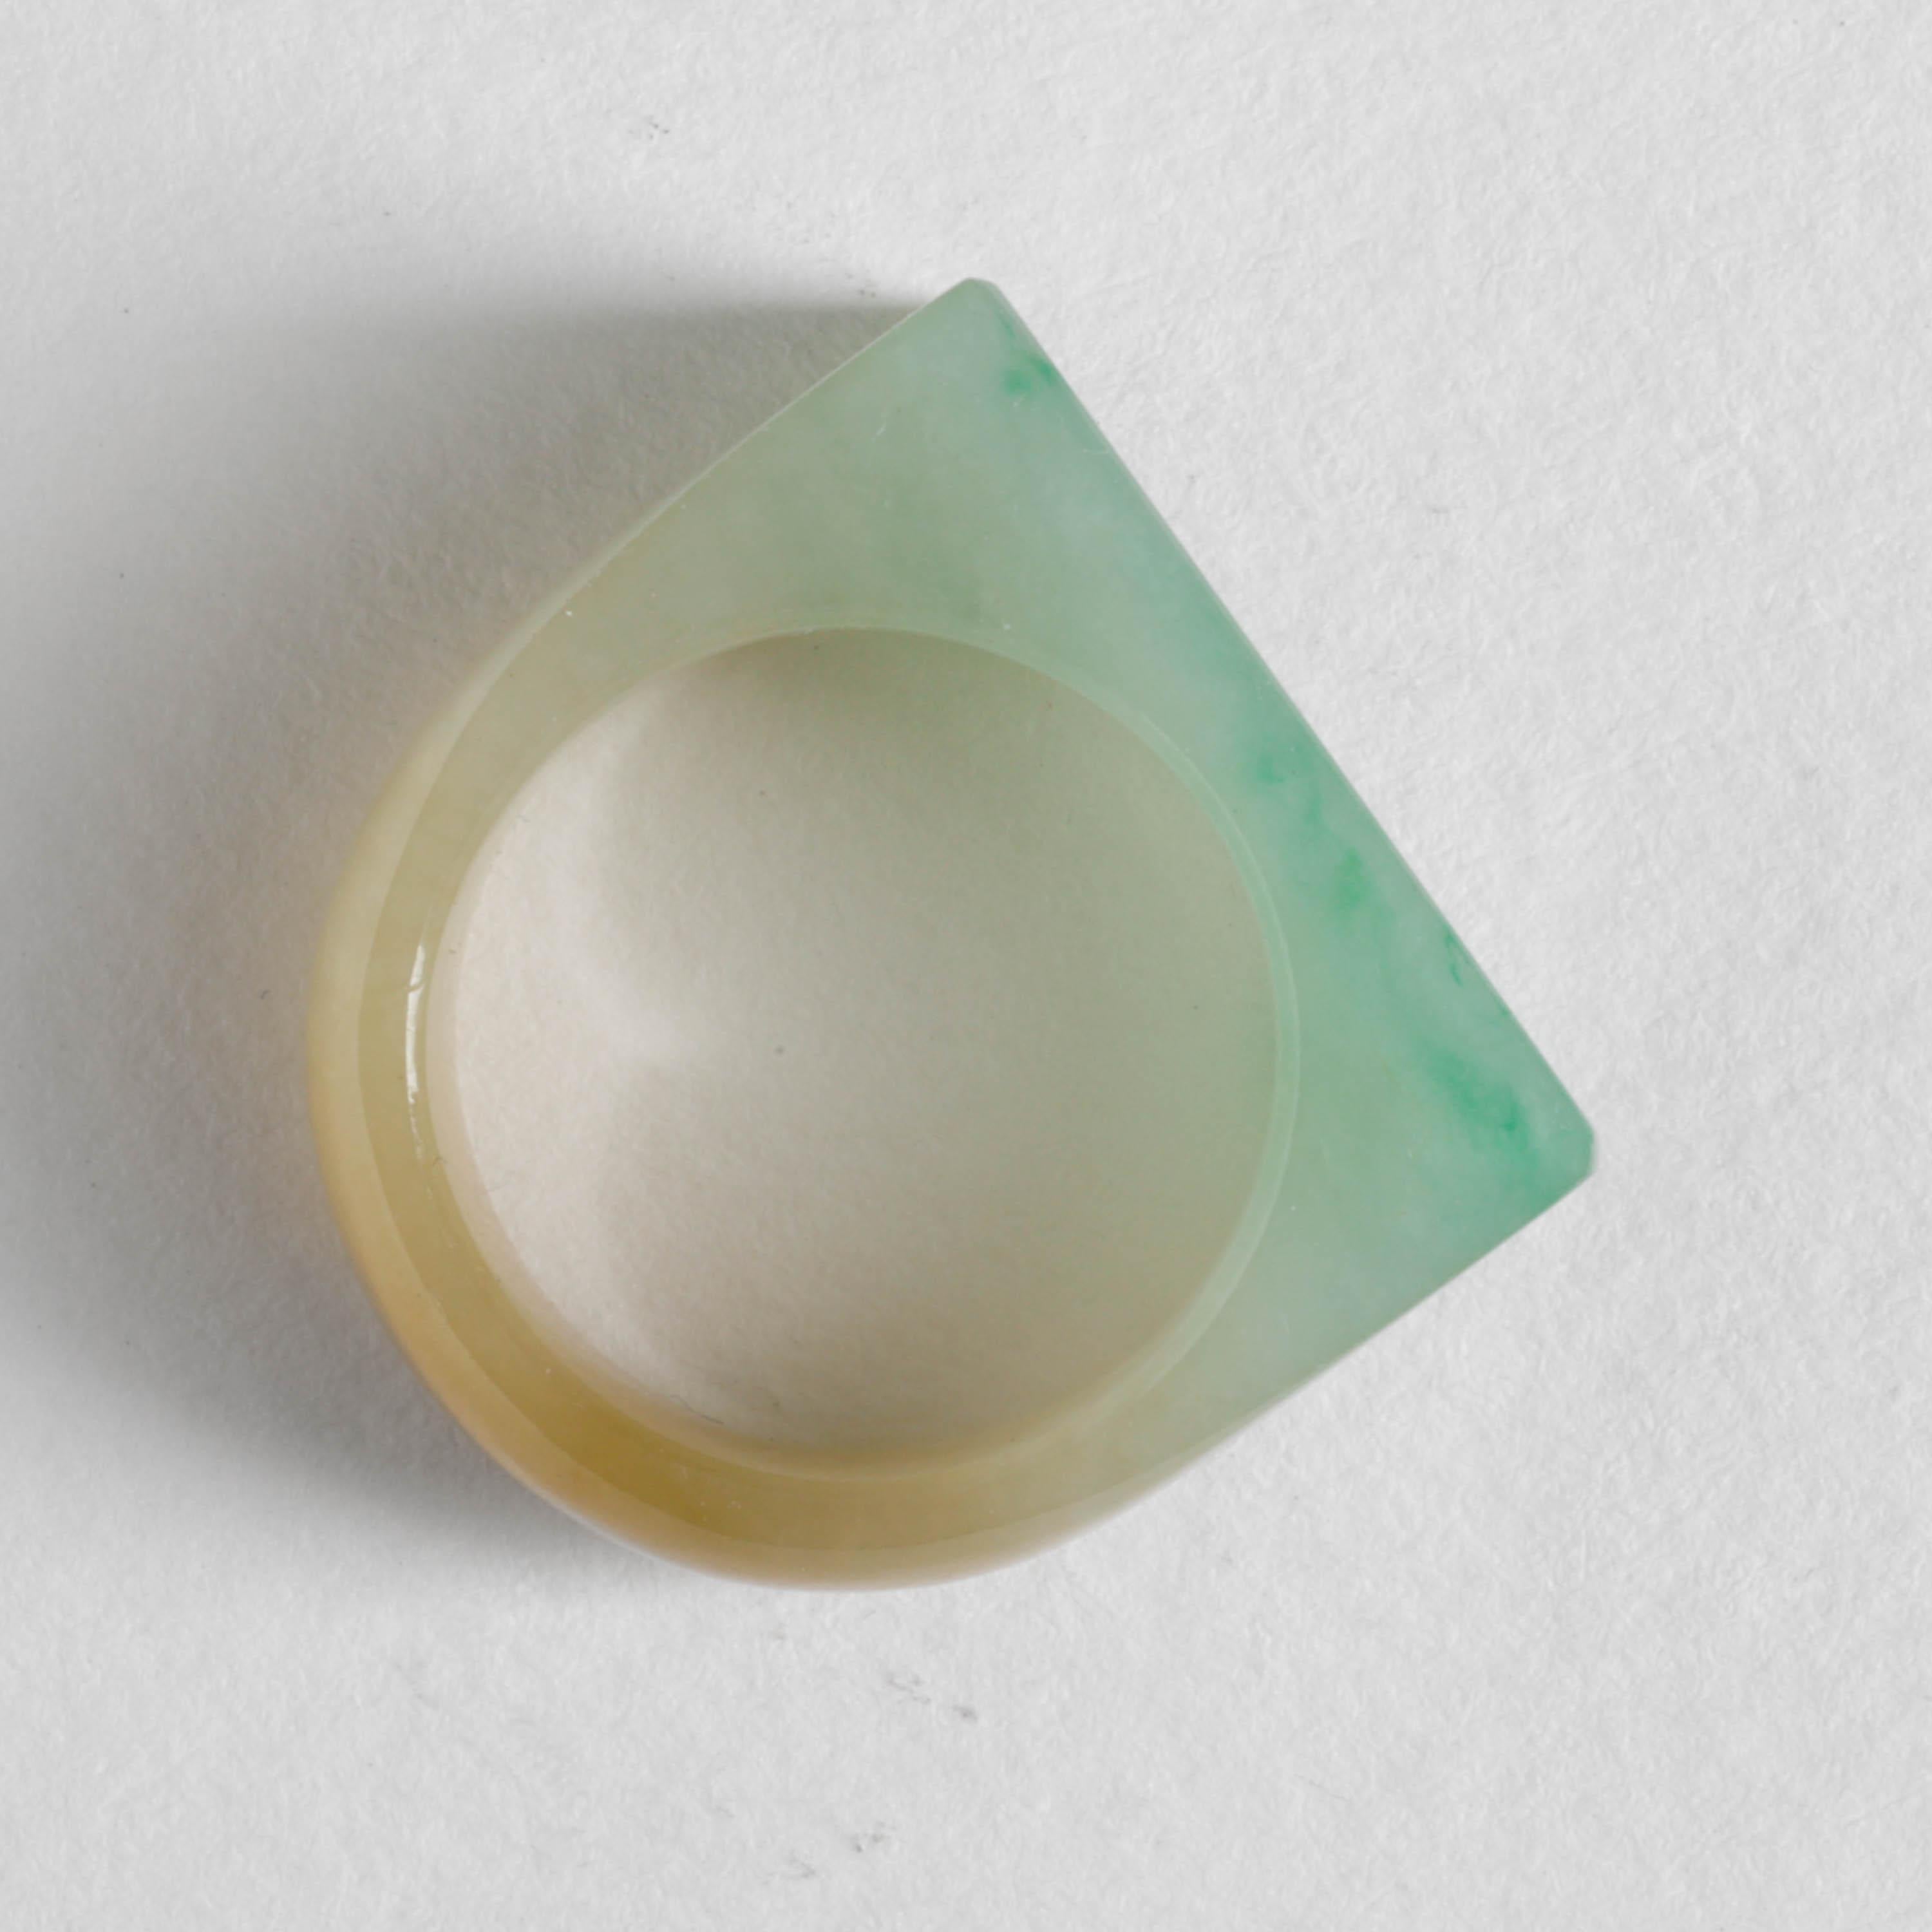 Dies ist ein hochtransparenter, handgeschnitzter Ring aus New Jadeit Jade. Es ist ein Meisterwerk der Subtilität und der Lapidarität. Die grüne Fläche wurde mit einer abgeschrägten Kante versehen, die diesem jahrhundertealten Ring eine ausgesprochen